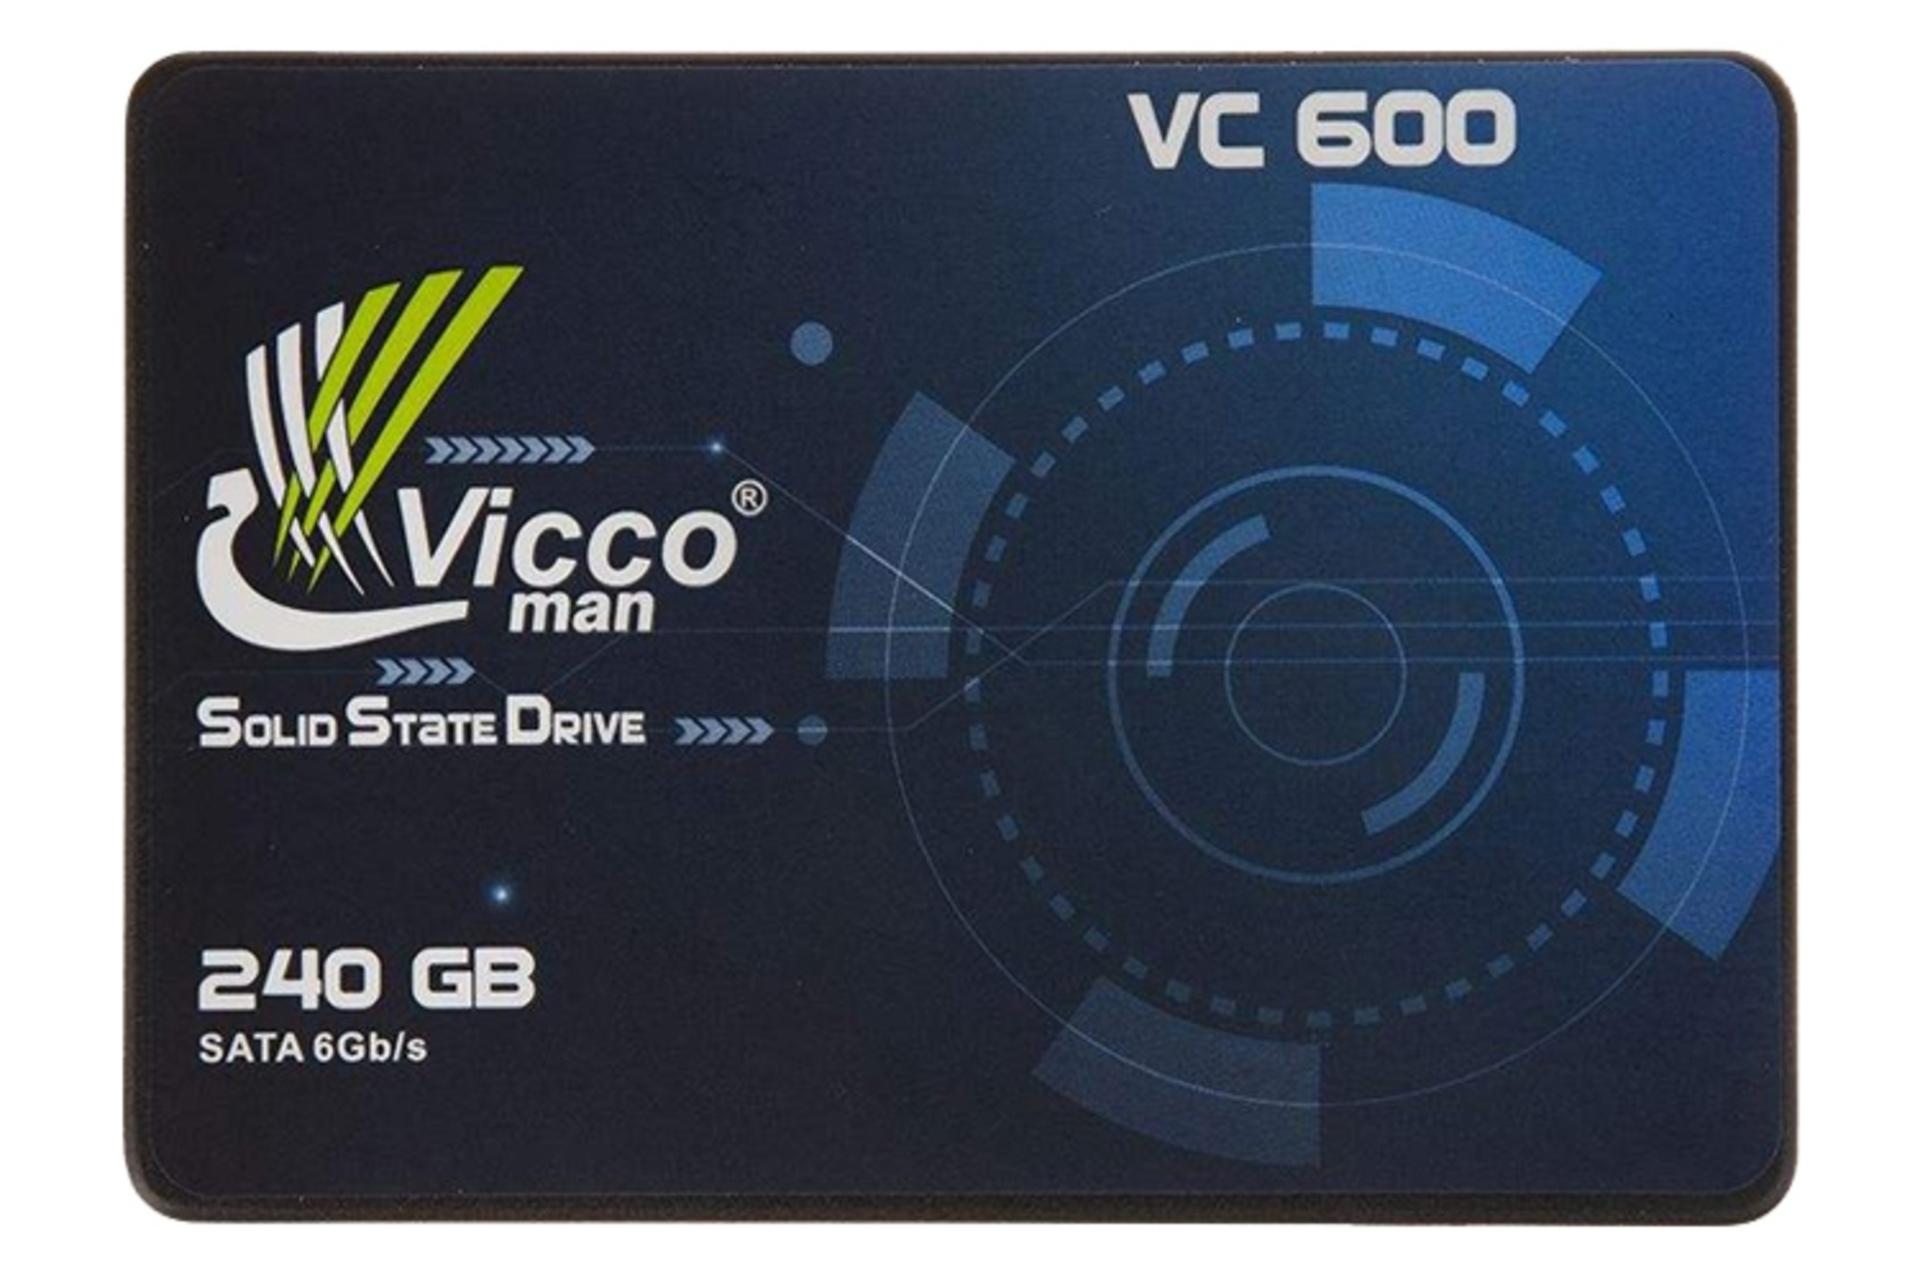 نمای روبرو SSD ویکومن Viccoman VC600 SATA 2.5 Inch 240GB ظرفیت 240 گیگابایت